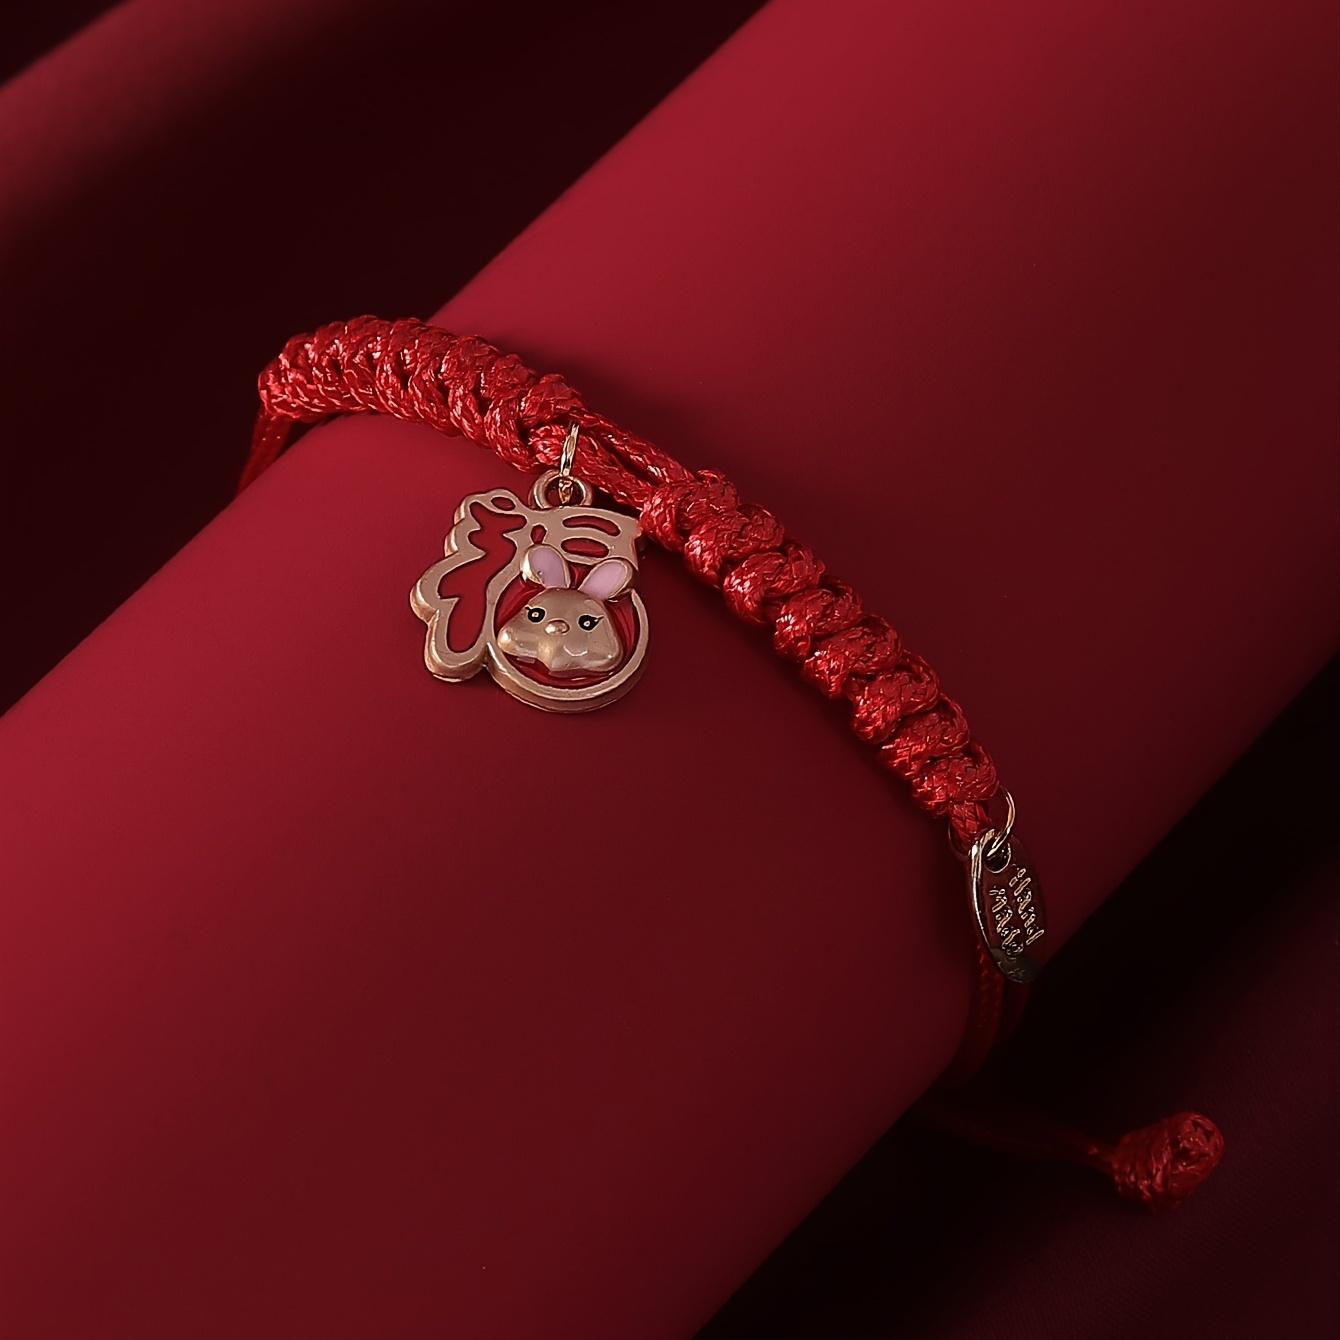 Handmade Braided Bracelet Adjustable Red String Bracelet for Women Girls Birthday Gift,Braclets,Temu